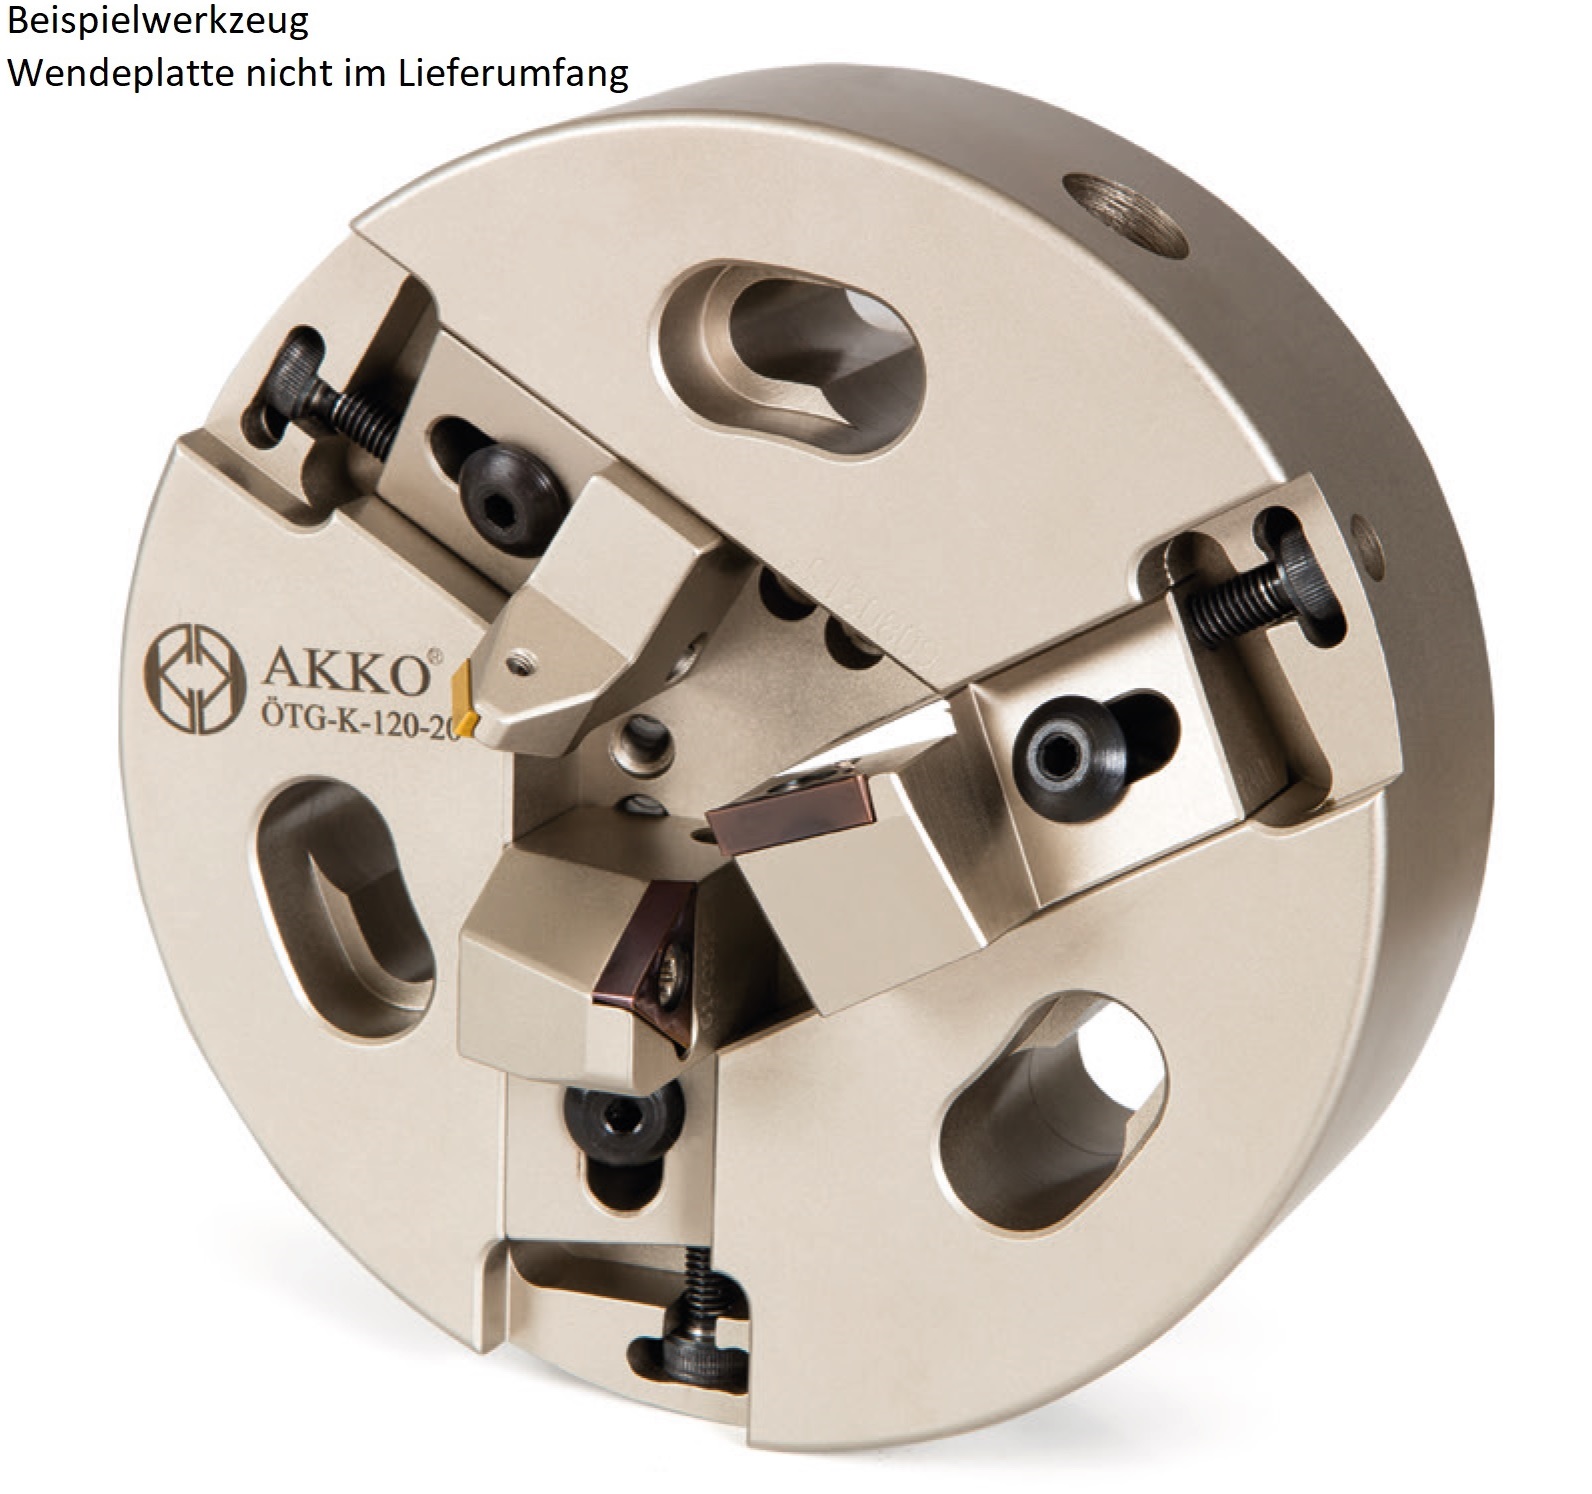 AKKO-Rohrenden-Anfaswerkzeug Dmax 49-53 mm, Dmin 32-36 mm, kompatibel mit ISO-Wendeplatte TC.. 1102.. und TC.. 16T3..
